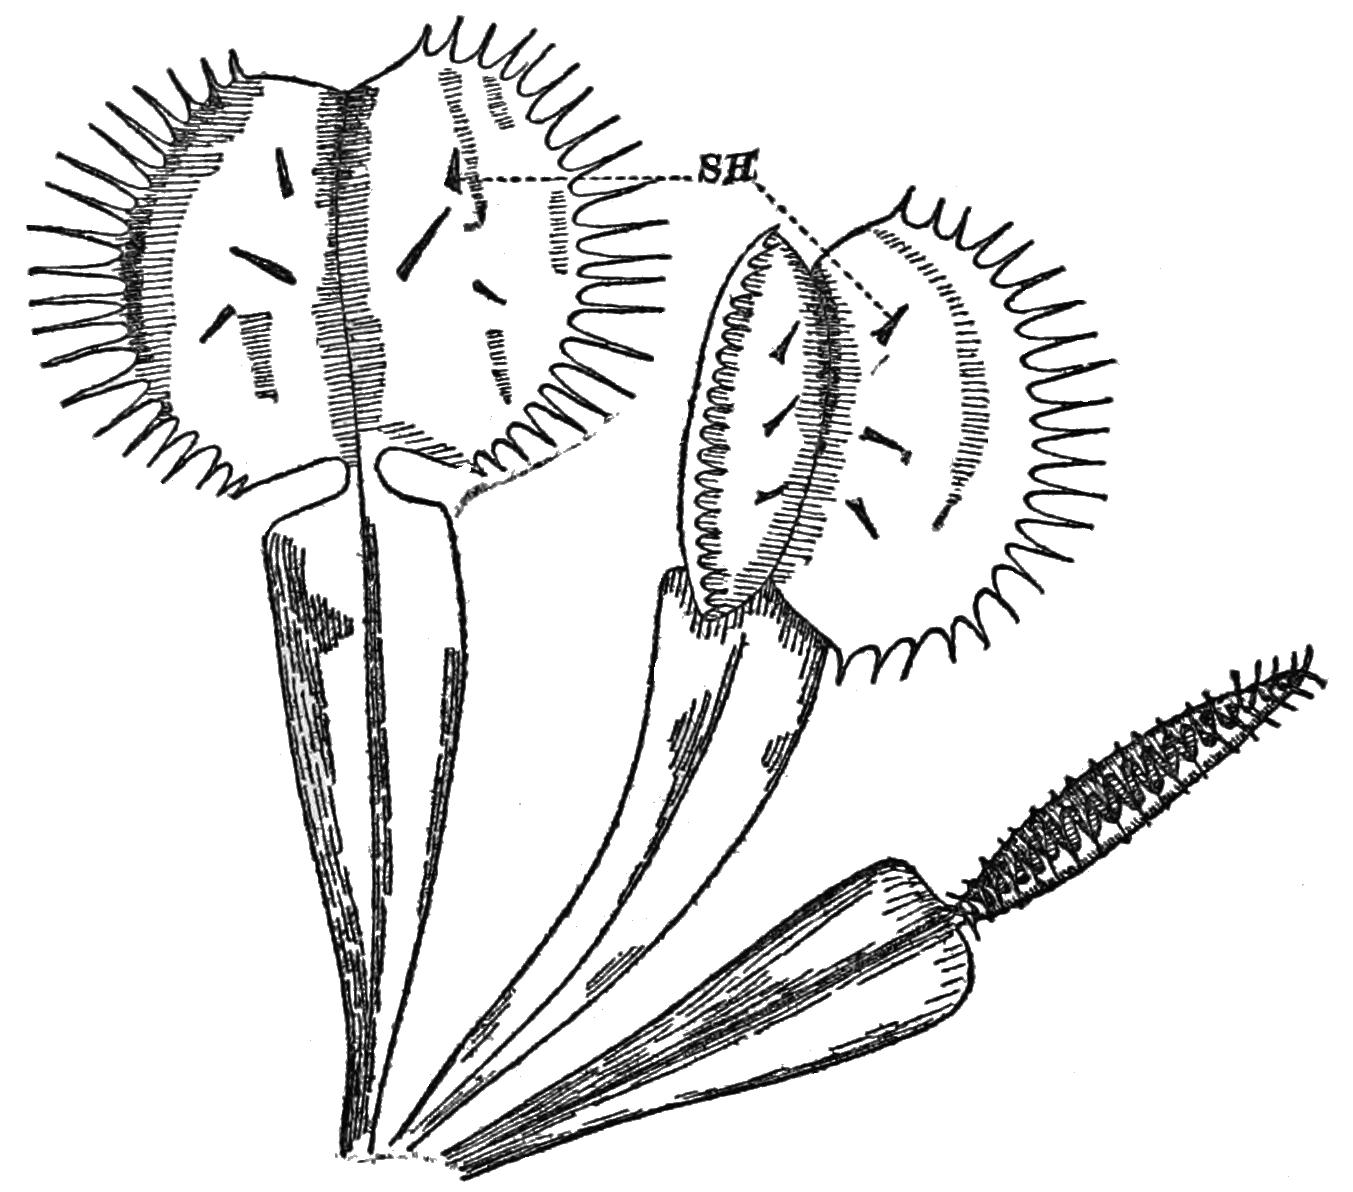 Filepsm v d vus flytrap dionaea muscipulapng